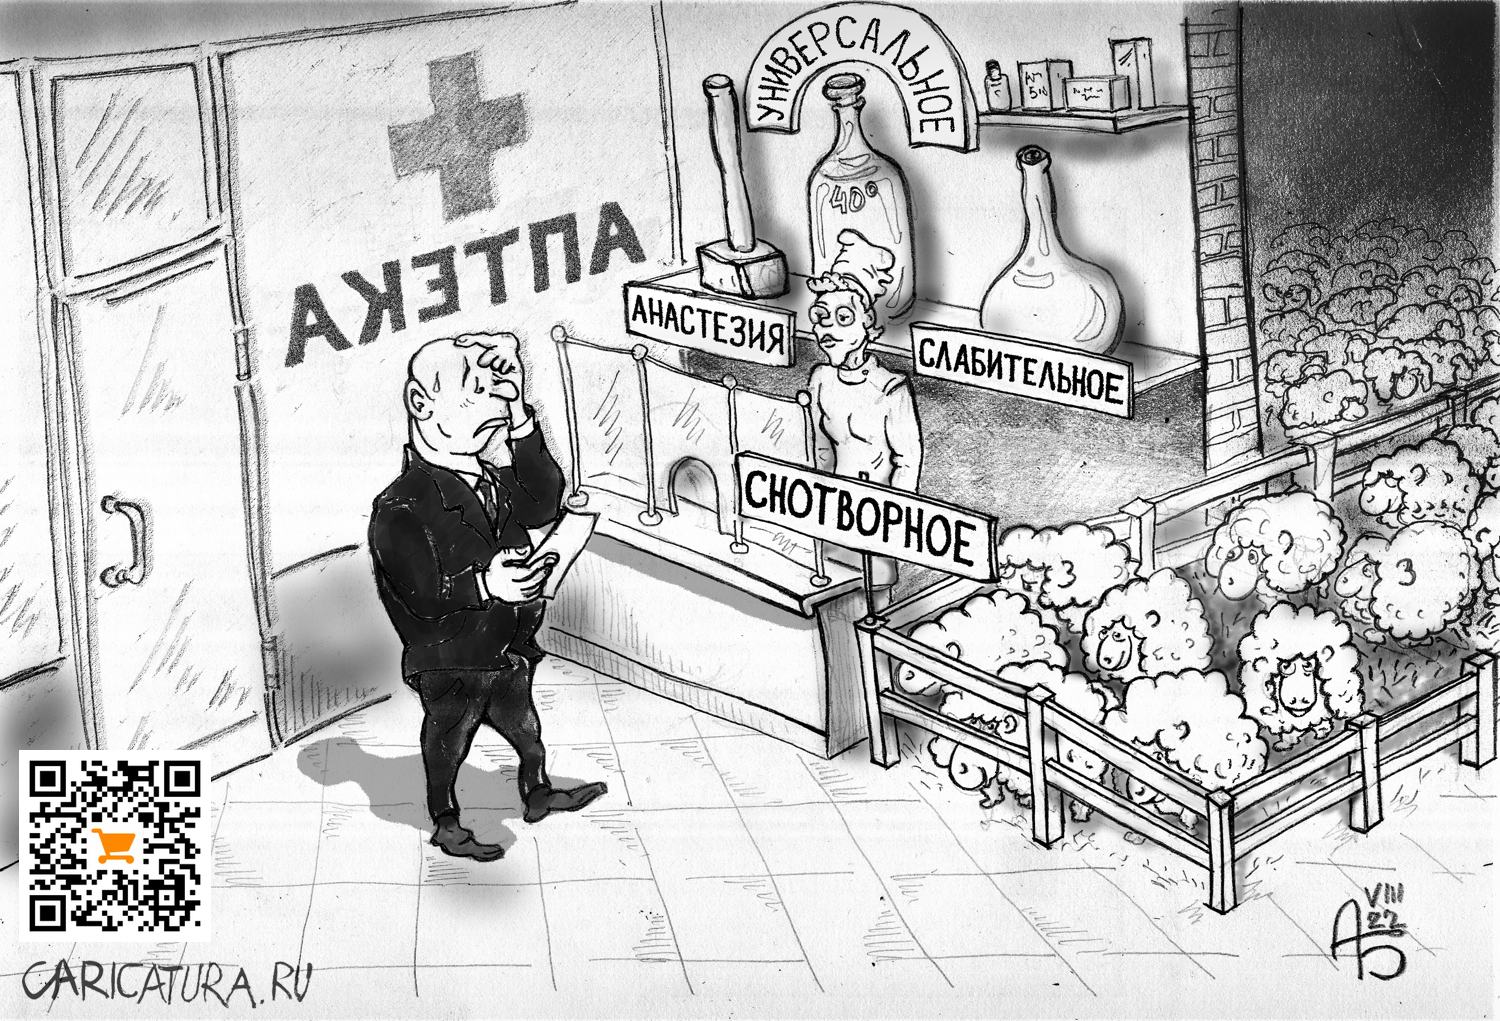 Карикатура "Аптека", Александр Богданов